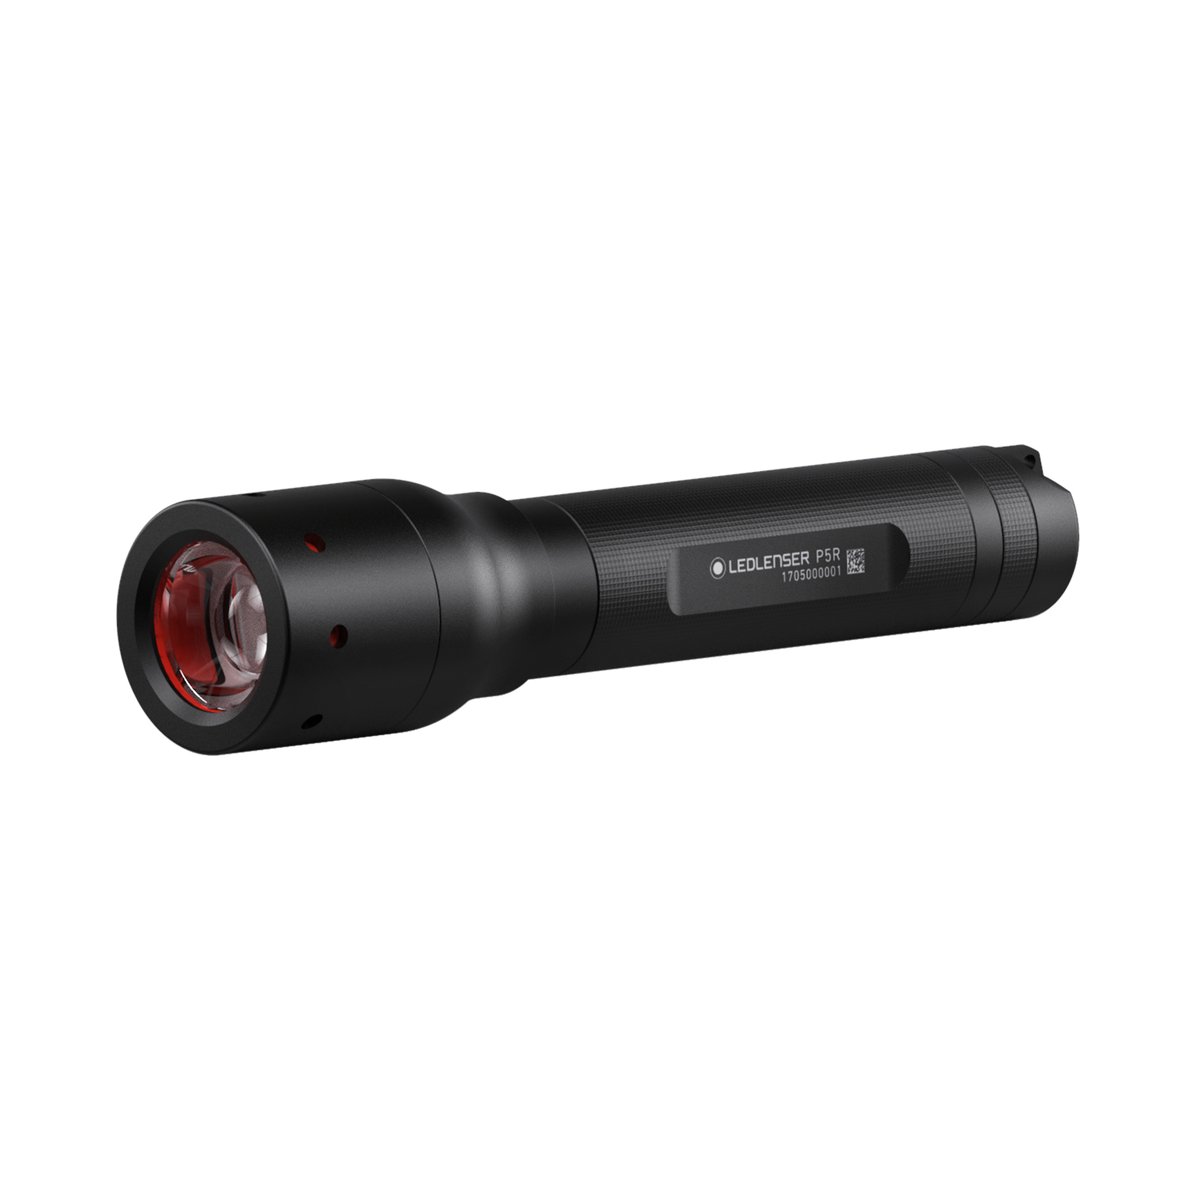 LED Lenser M17R Flashlight: Let Your Light Shine